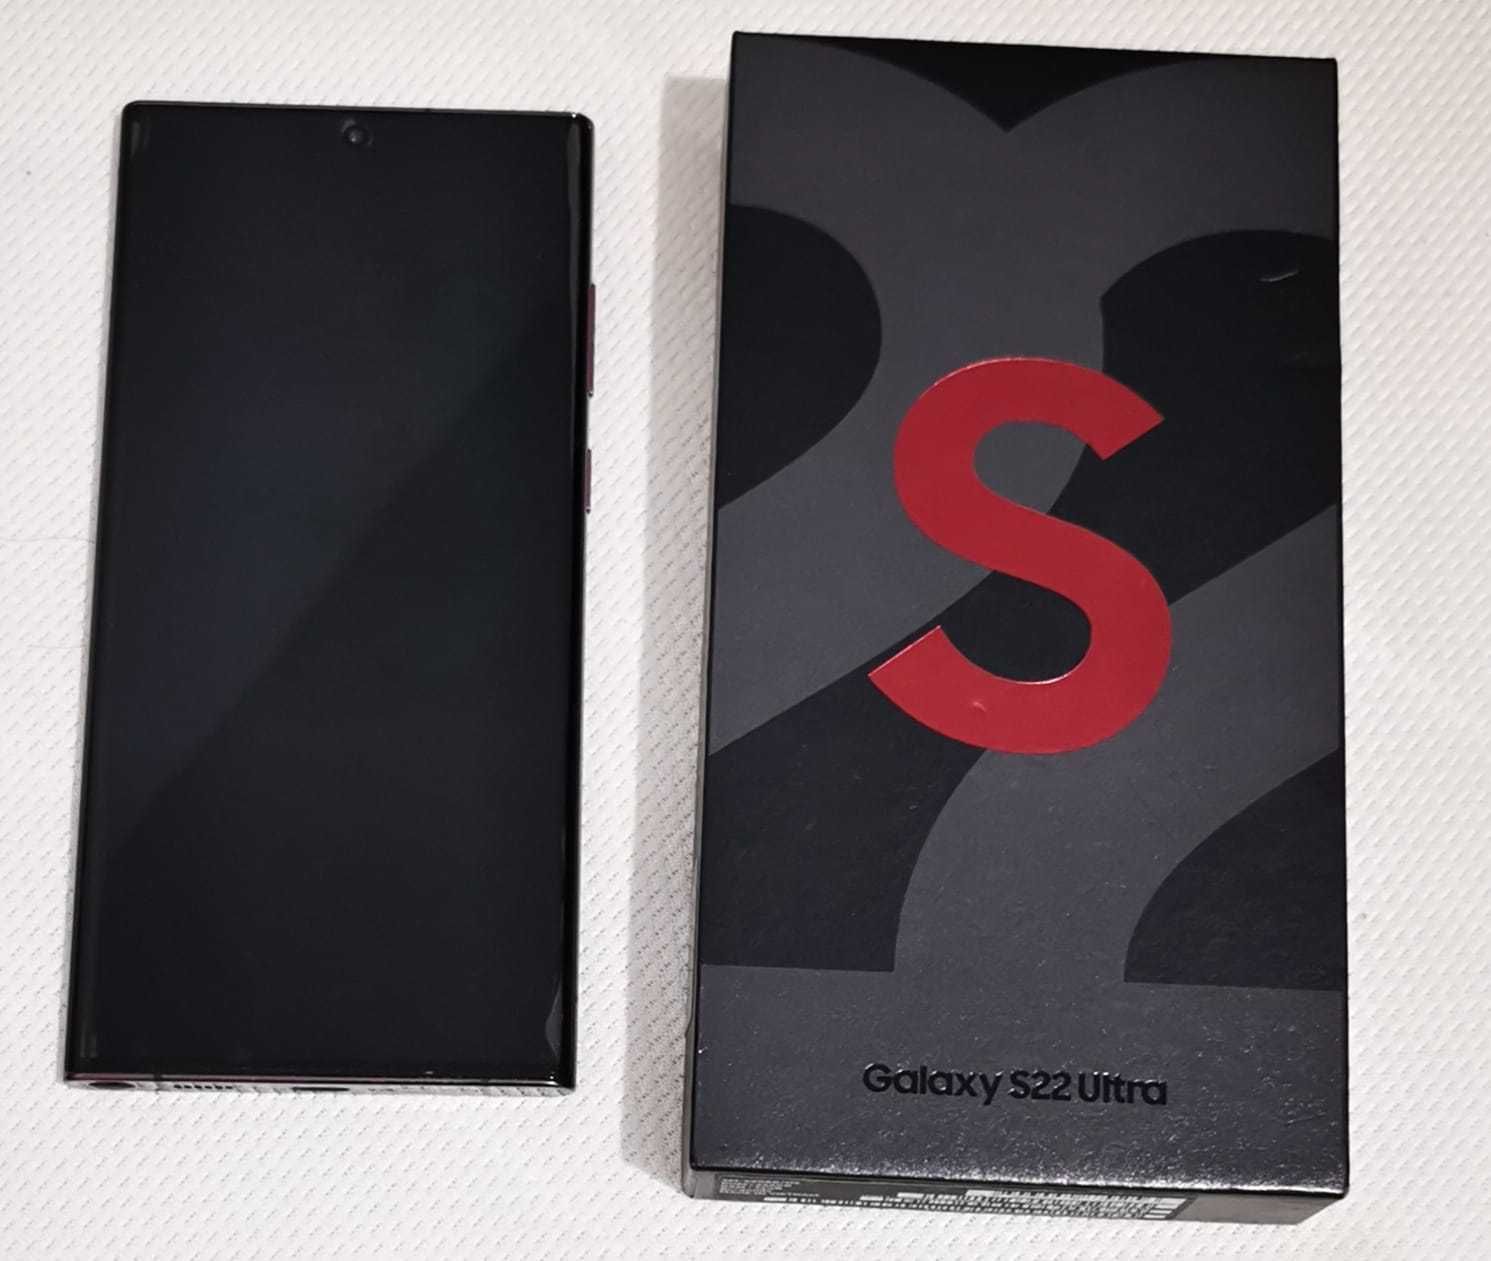 Samsung S22 Ultra com caixa e fatura